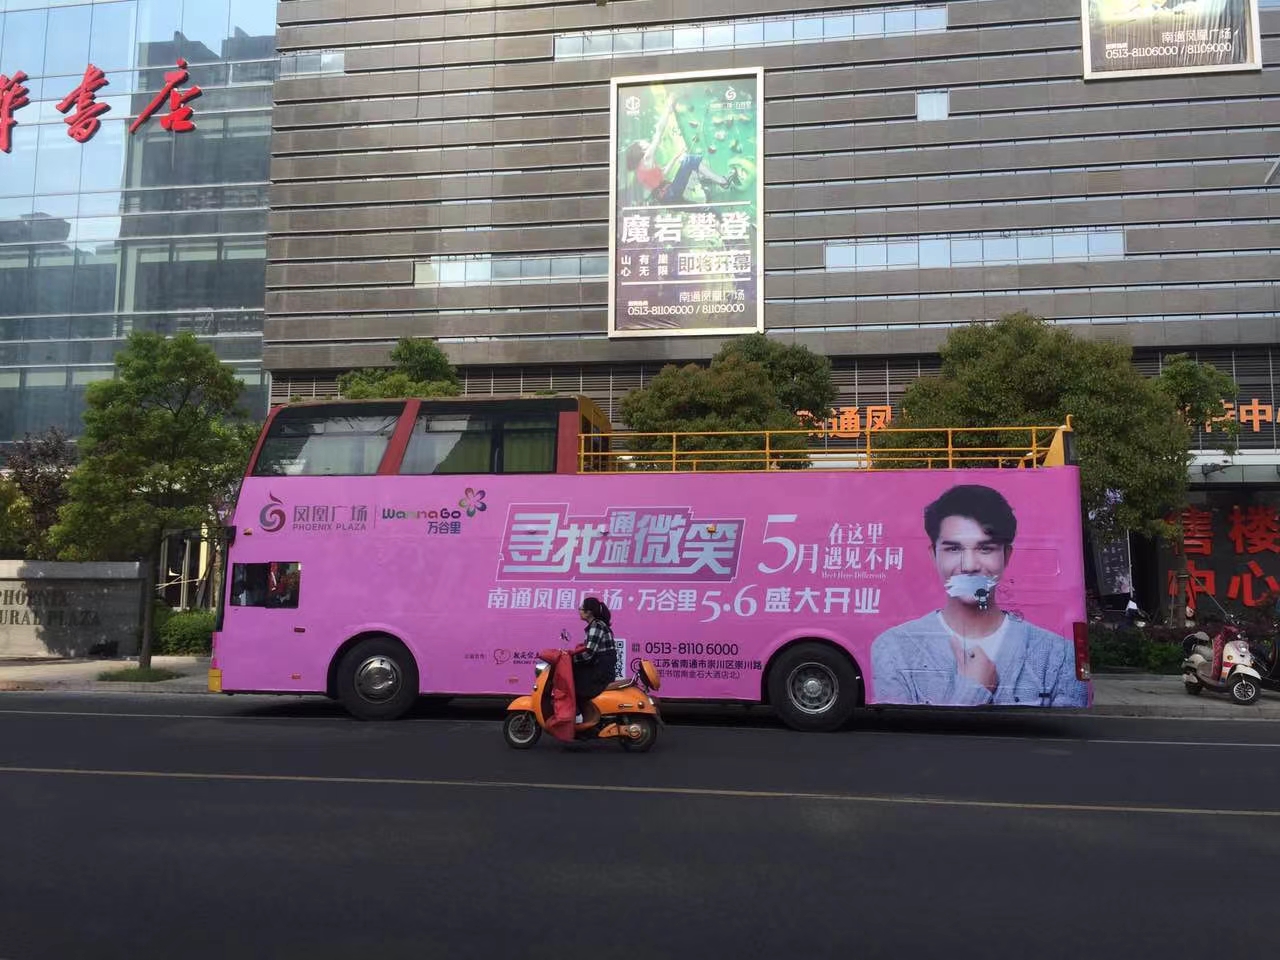 2020年10月2号到3号，安徽良友双层敞篷巡游巴士来到安徽省滁州市